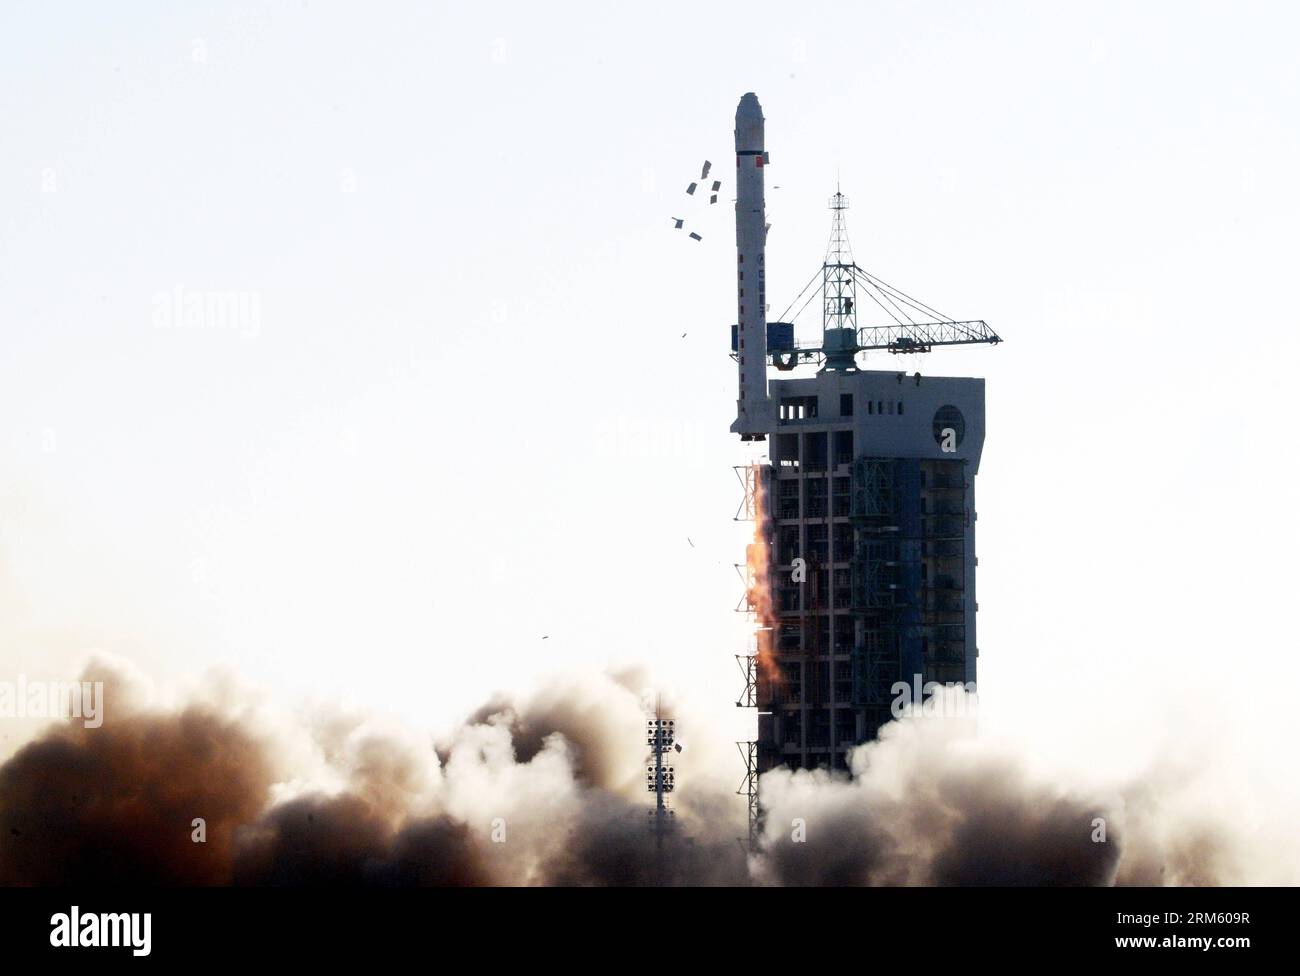 Bildnummer: 60751478 Datum: 25.11.2013 Copyright: imago/Xinhua eine lange März-2D-Trägerrakete mit dem Experiment-5-Satelliten springt vom Startplatz des Jiuquan Satellite Launch Center in Jiuquan, Provinz Gansu im Nordwesten Chinas, 25. November 2013. China hat am Montag erfolgreich den Satelliten gestartet, der technologische Experimente und Umweltuntersuchungen durchführen wird. (Xinhua/Zhu Zheng) (ry) CHINA-JIUQUAN-SATELLITE-LAUNCH (CN) PUBLICATIONxNOTxINxCHN Gesellschaft Raumfahrt Start Rakete Raketenstart China xcb x0x 2013 quer Premiumd Stockfoto